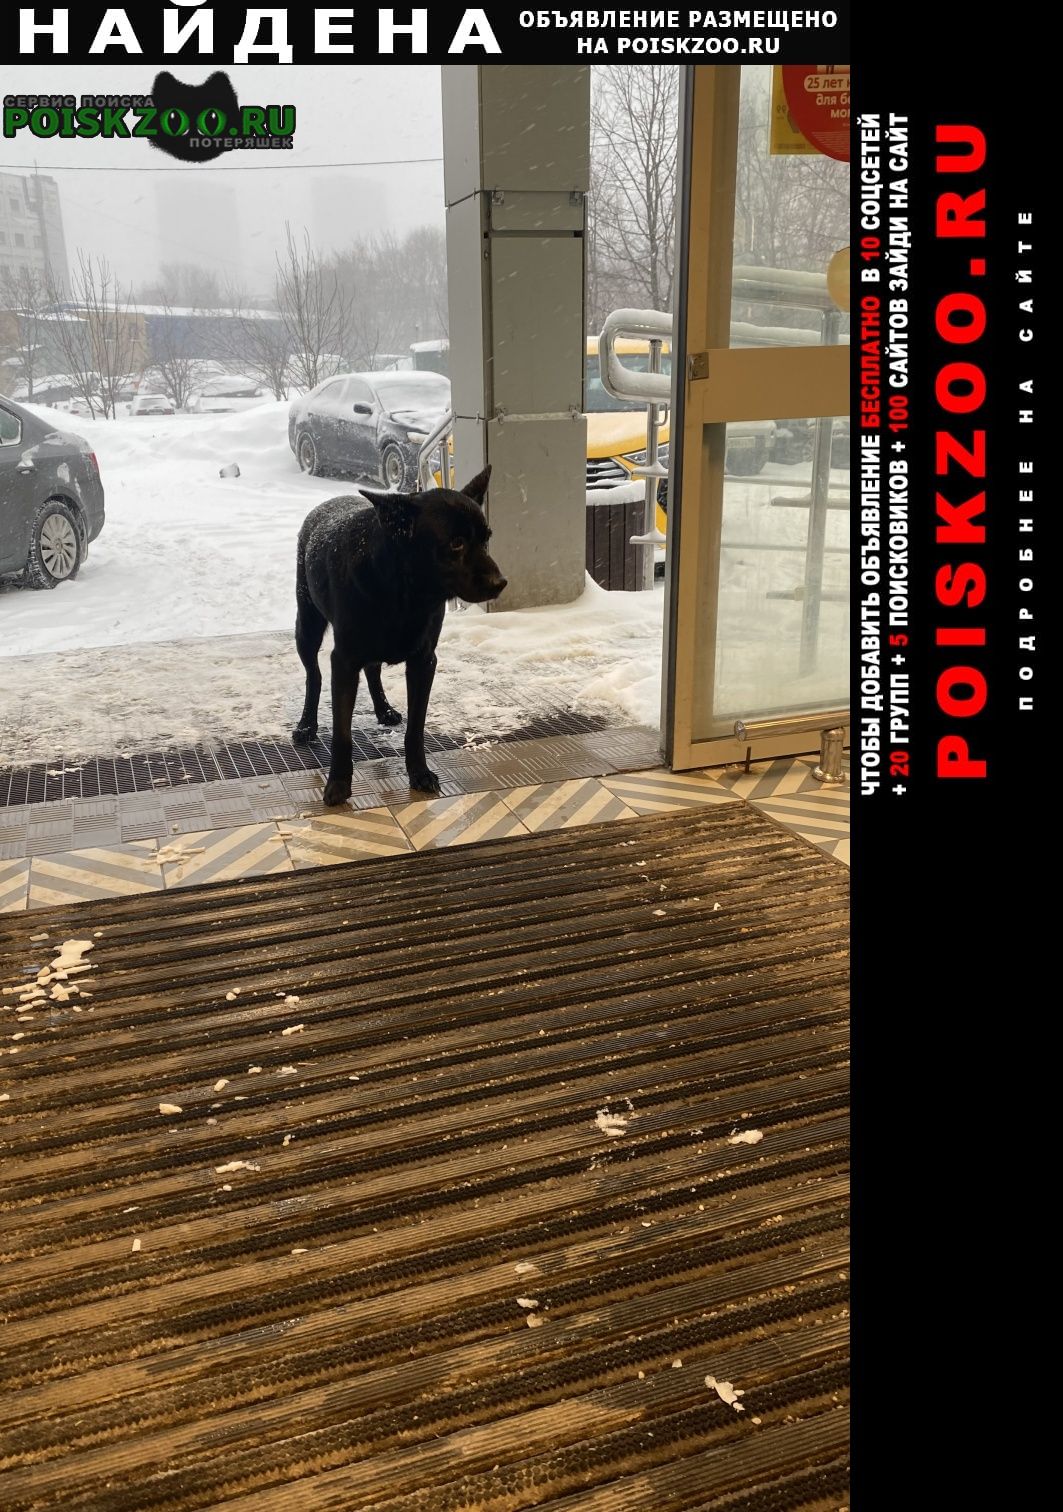 Найдена собака марьино Москва